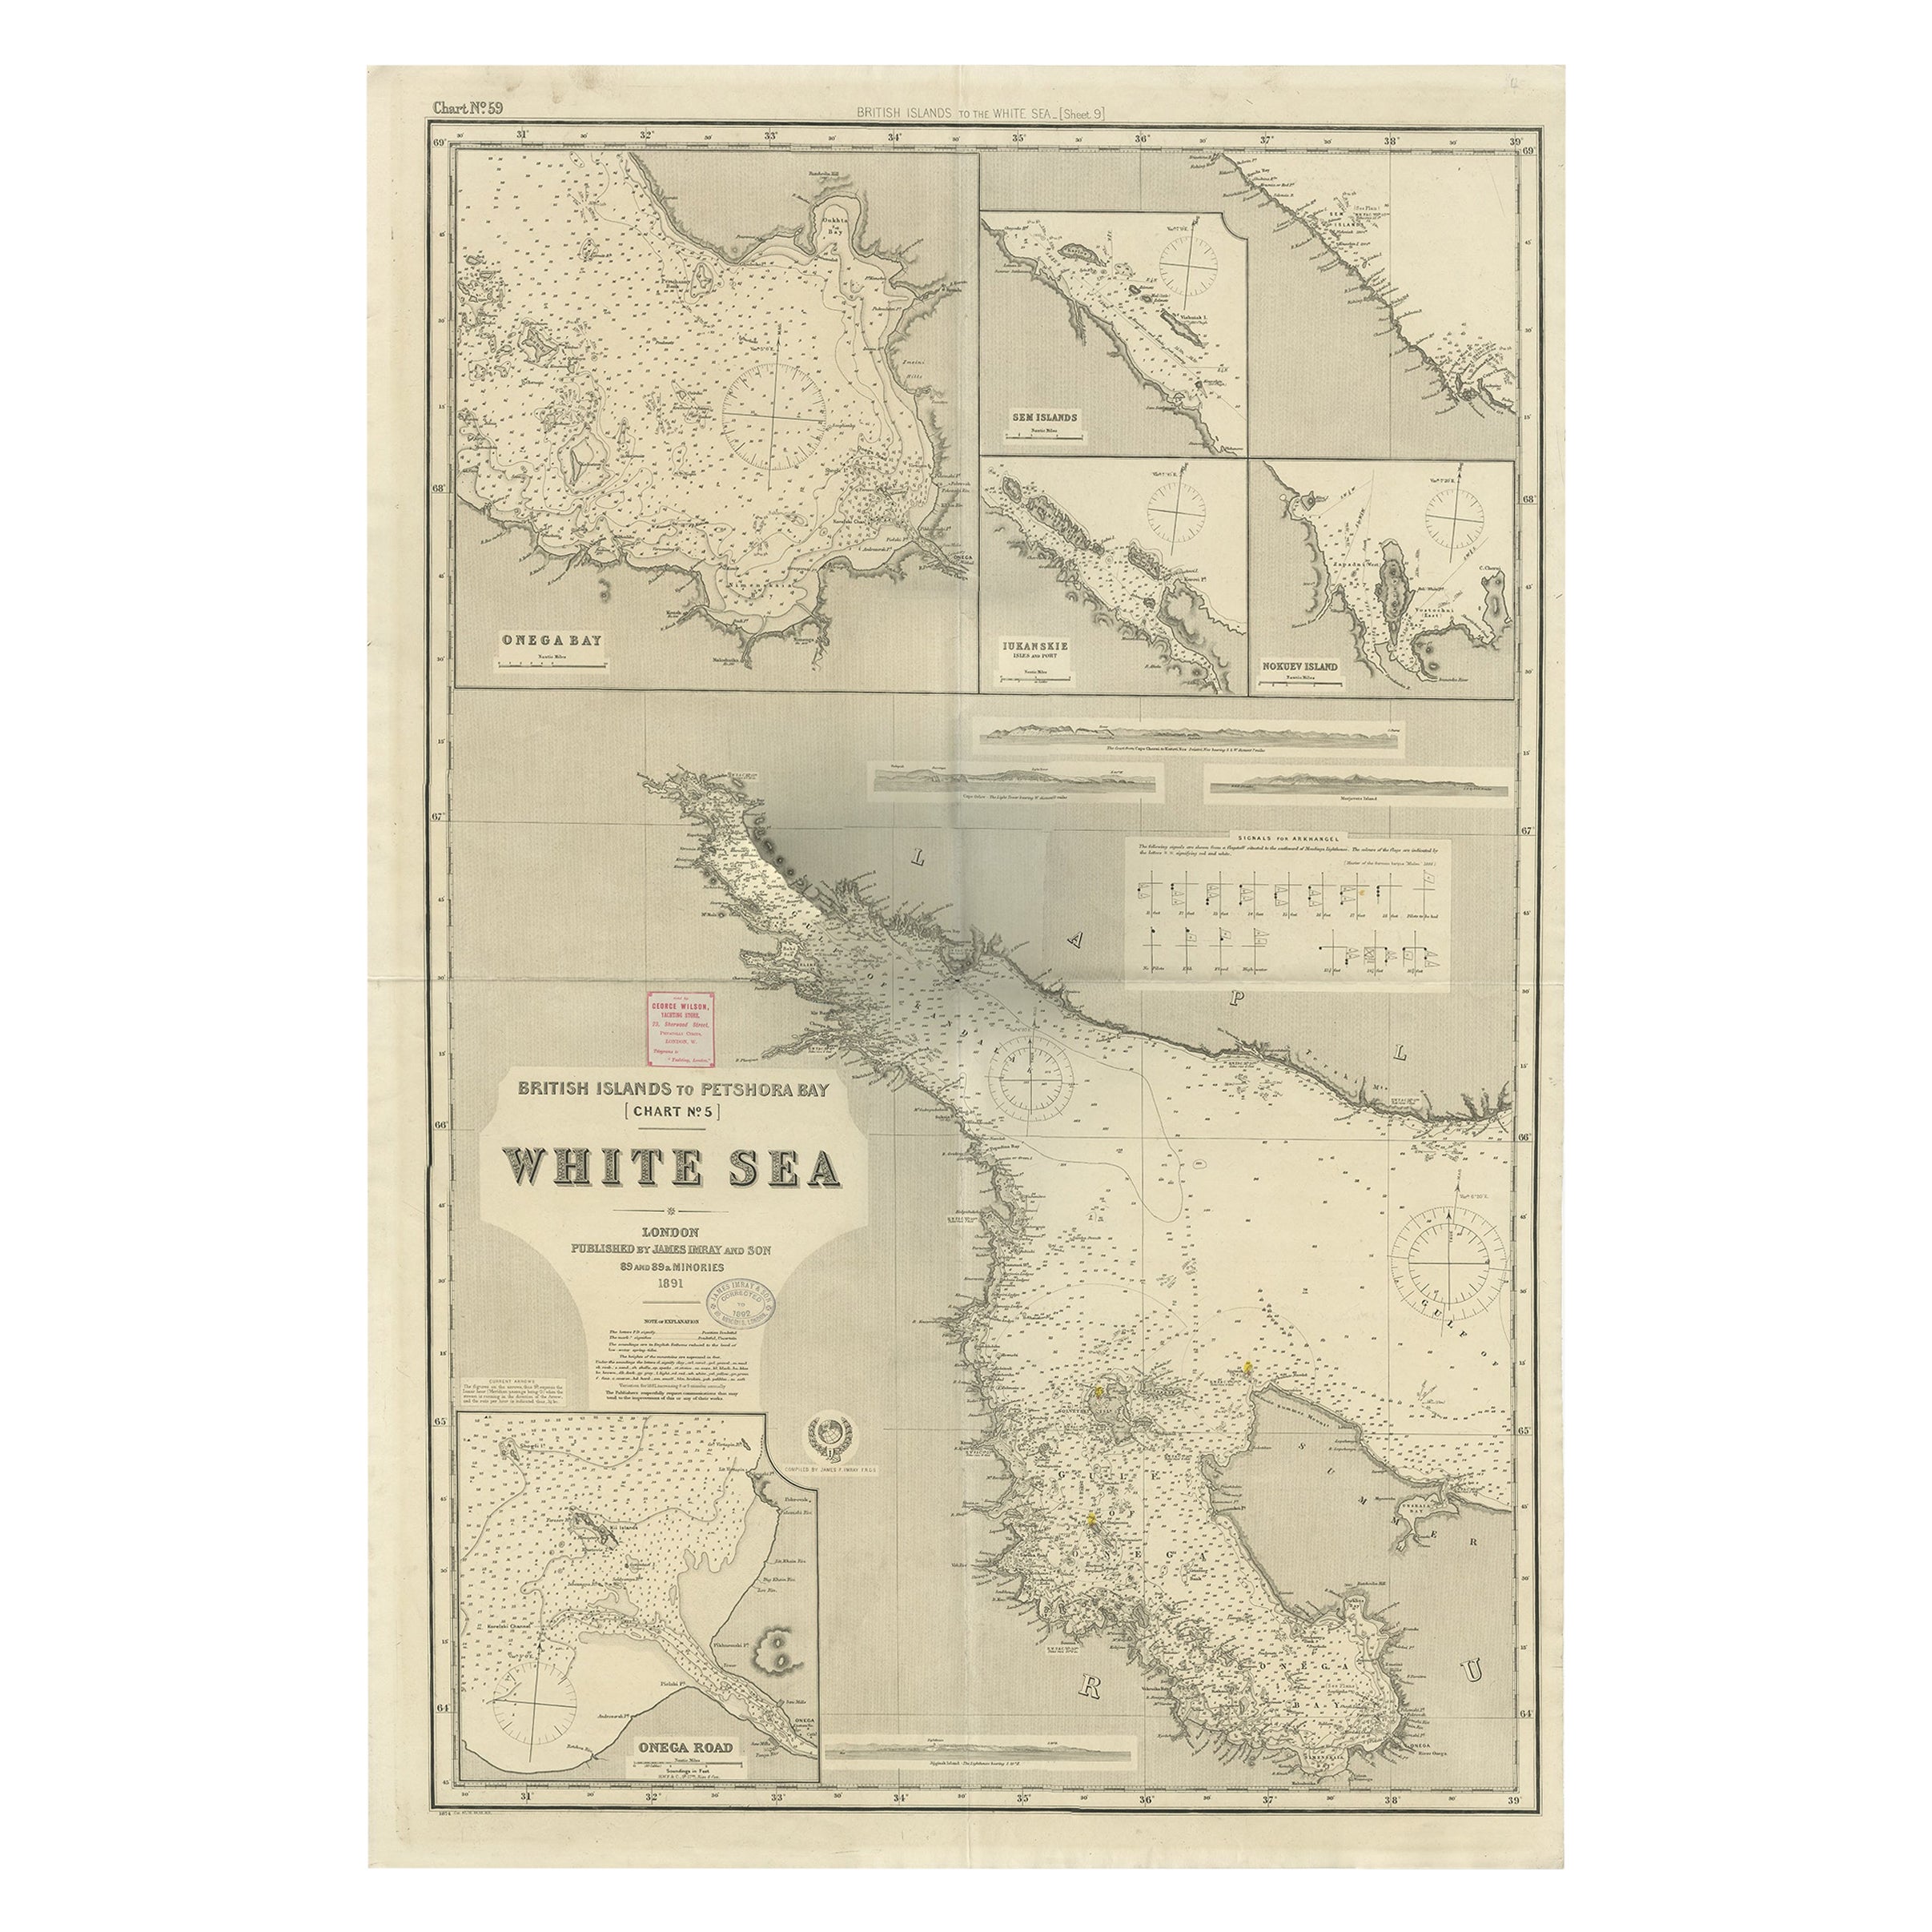 Ungewöhnliche, große Karte der britischen Inseln bis zur Petshora Bay, 1891